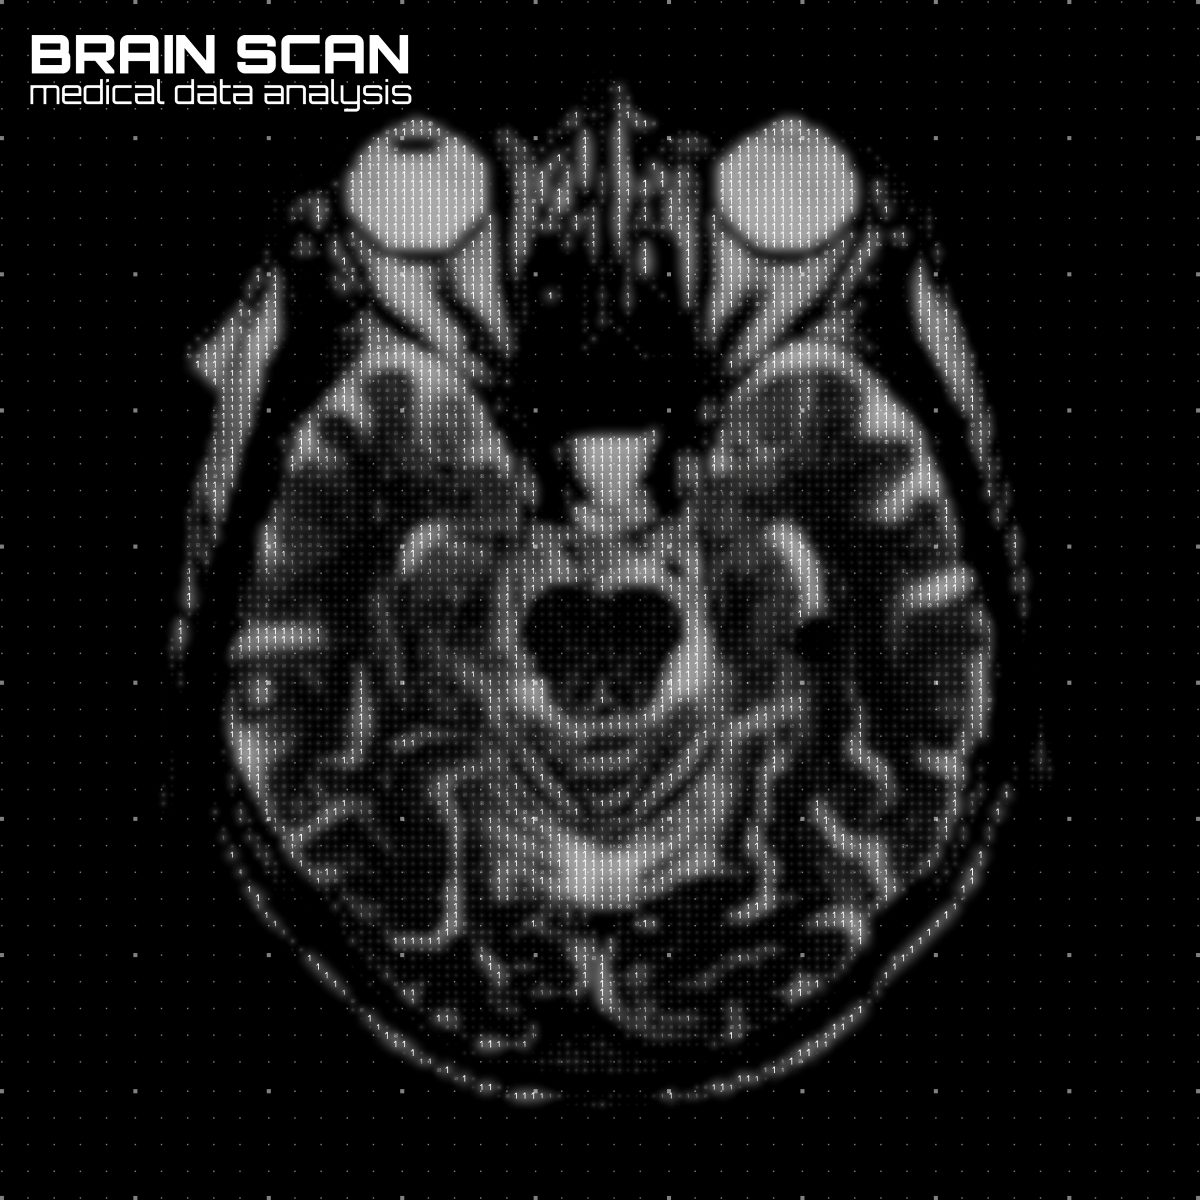 brain imaging